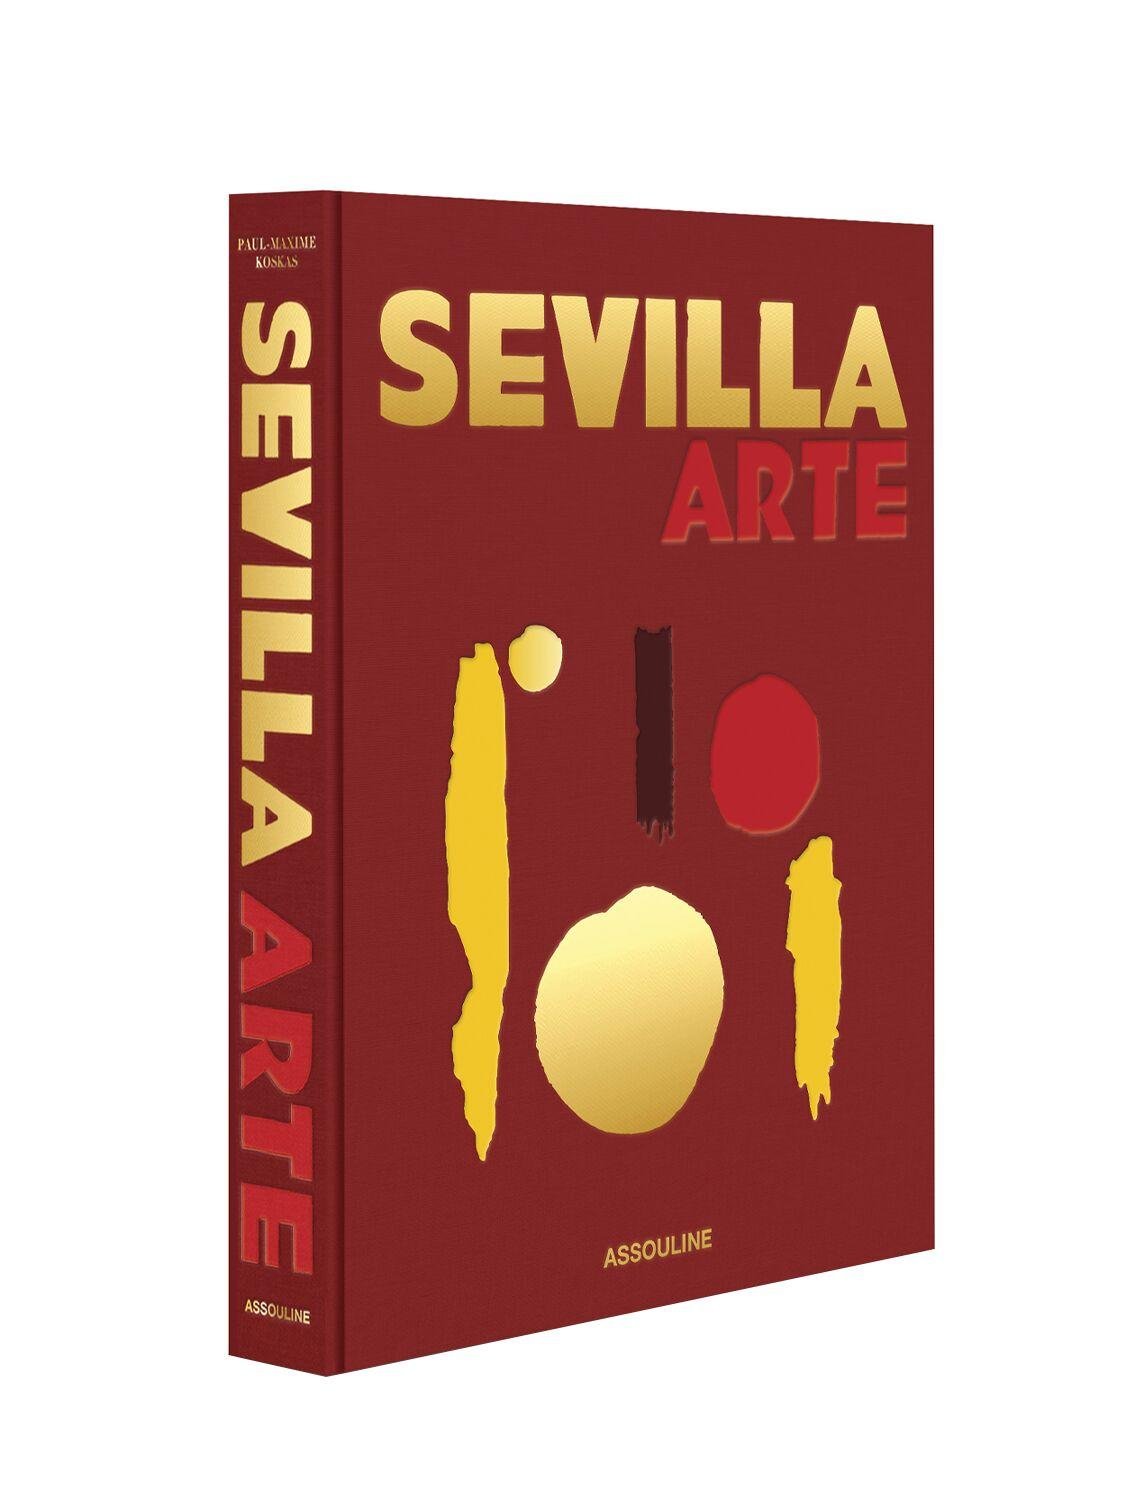 Sevilla Arte by ASSOULINE